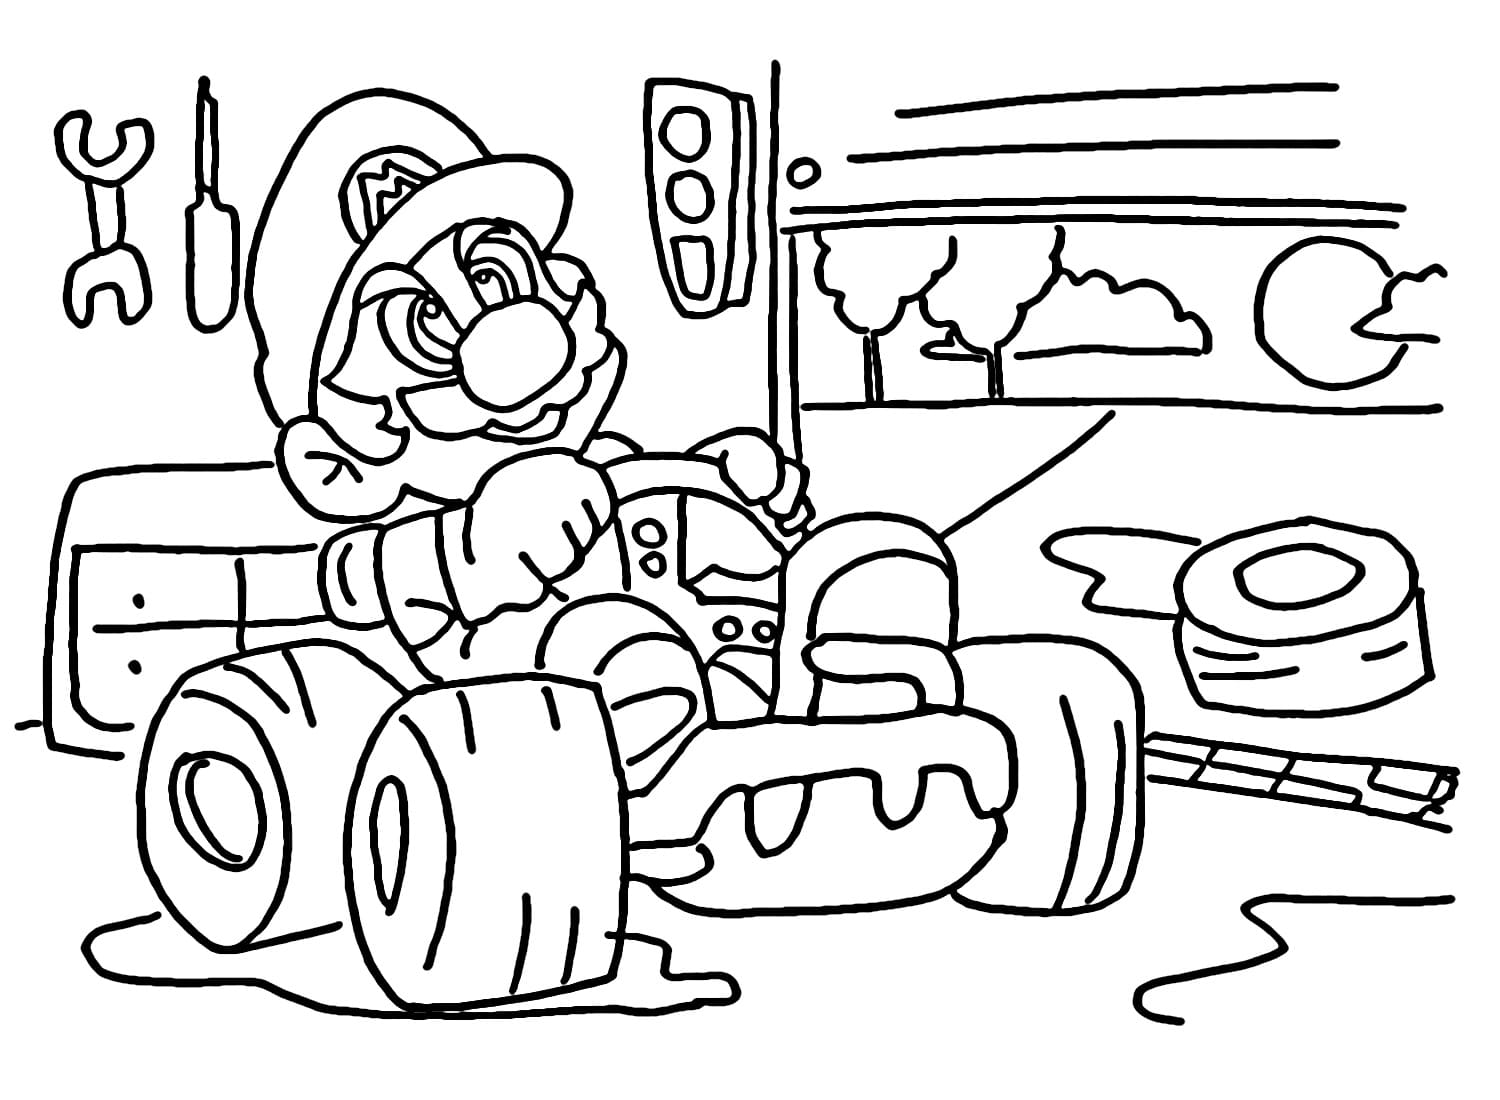 Mario kart donkey kong coloring page